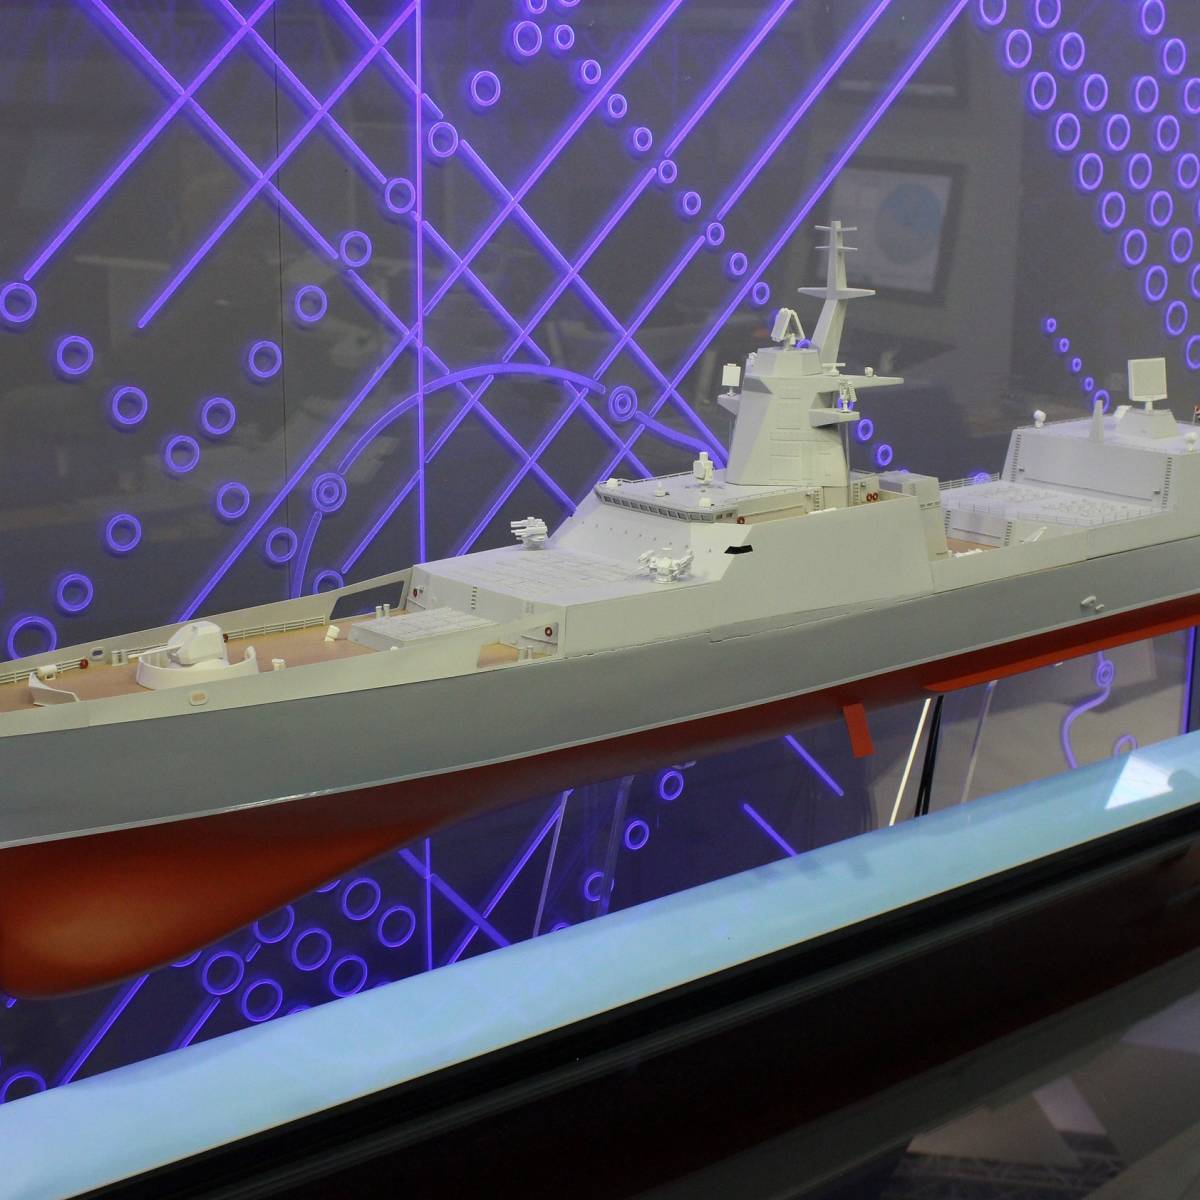 Проект 22350м: флот России планирует разработку 10 новейших кораблей